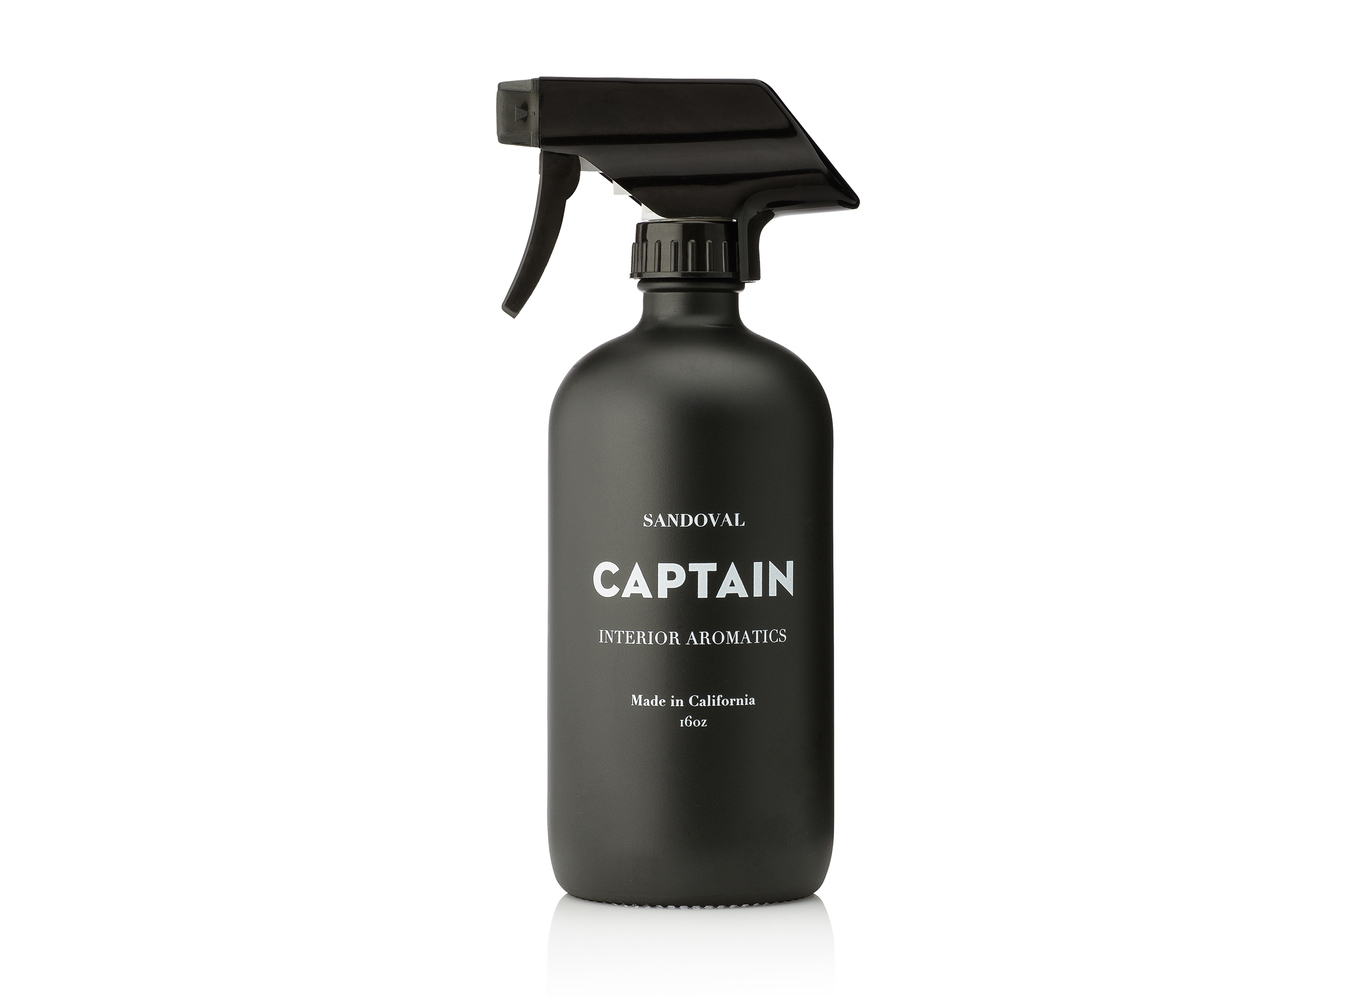 Room spray: Sandoval Interior Aromatic in Captain